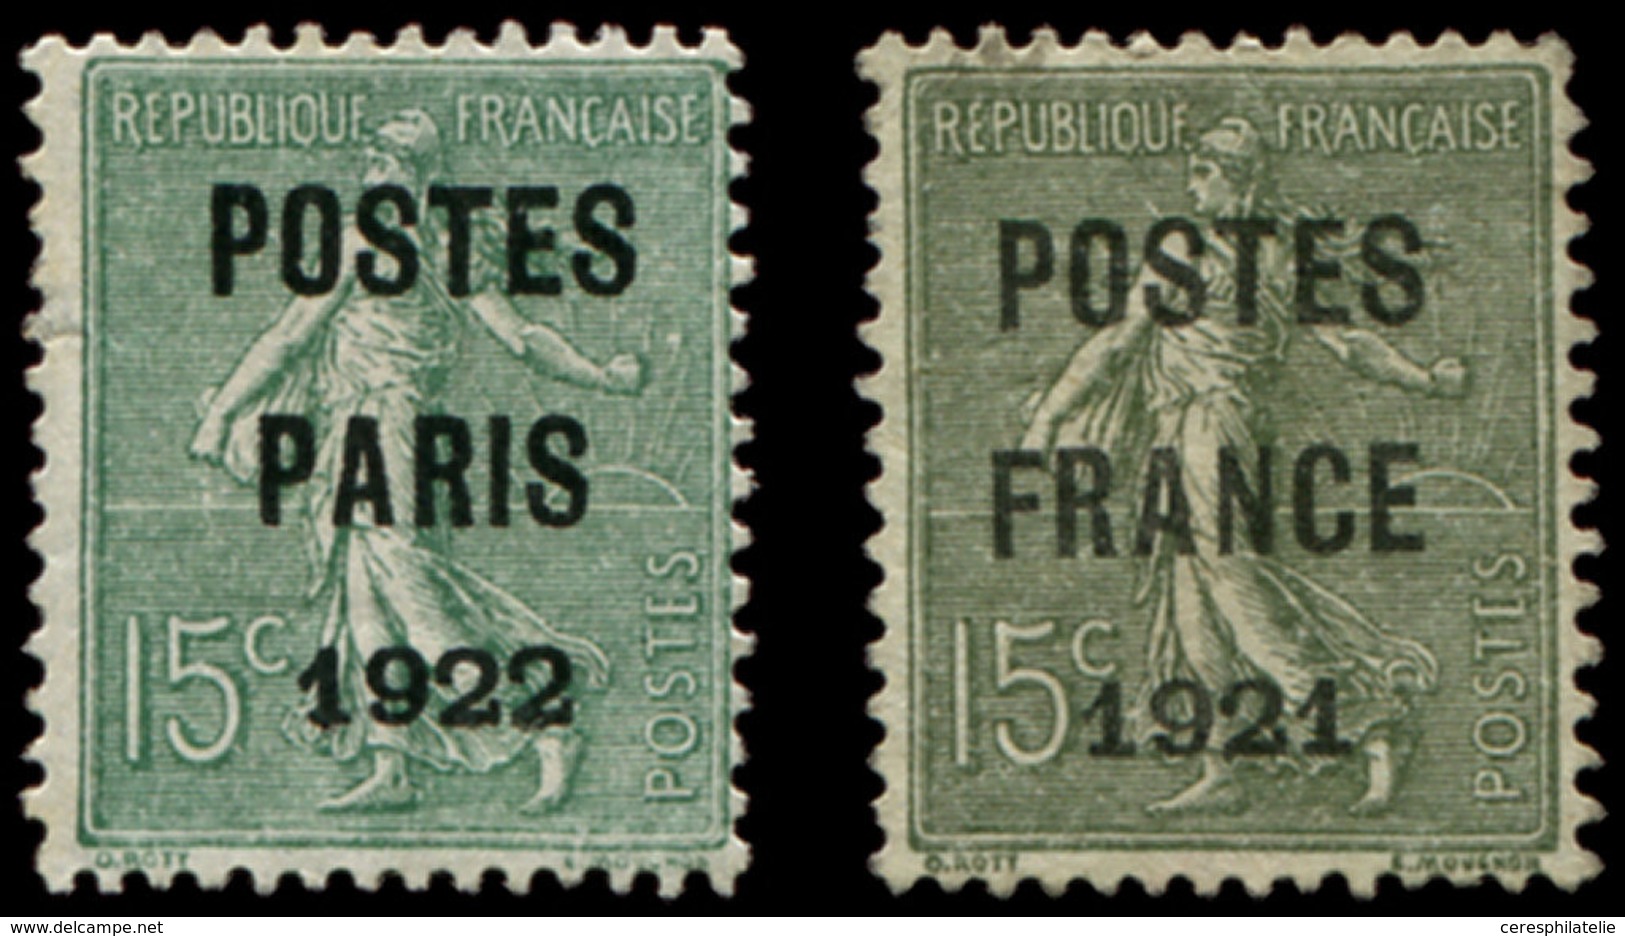 (*) PREOBLITERES - 31 Et 34, 15c. Vert Olive, POSTES PARIS 1922 Et POSTES FRANCE 1921, Les 2 Petit Aminci, Aspect TB - 1893-1947